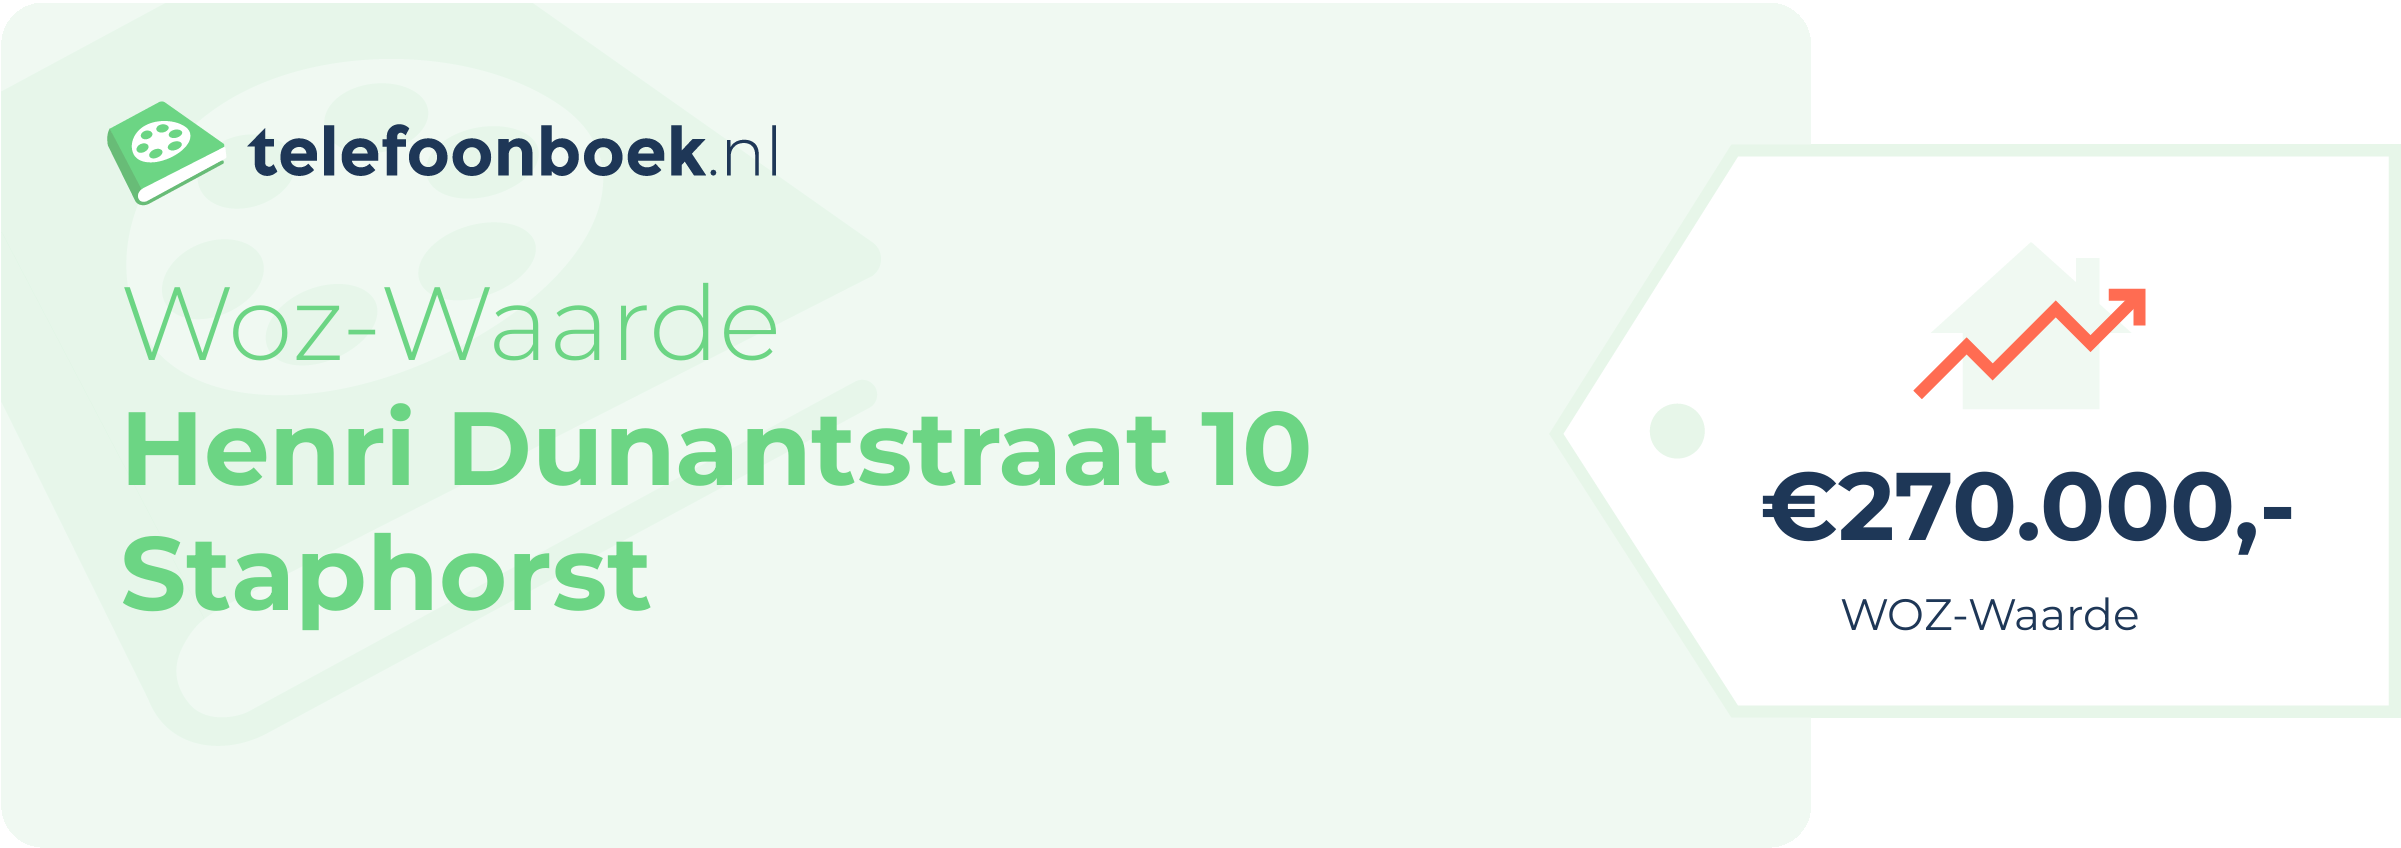 WOZ-waarde Henri Dunantstraat 10 Staphorst